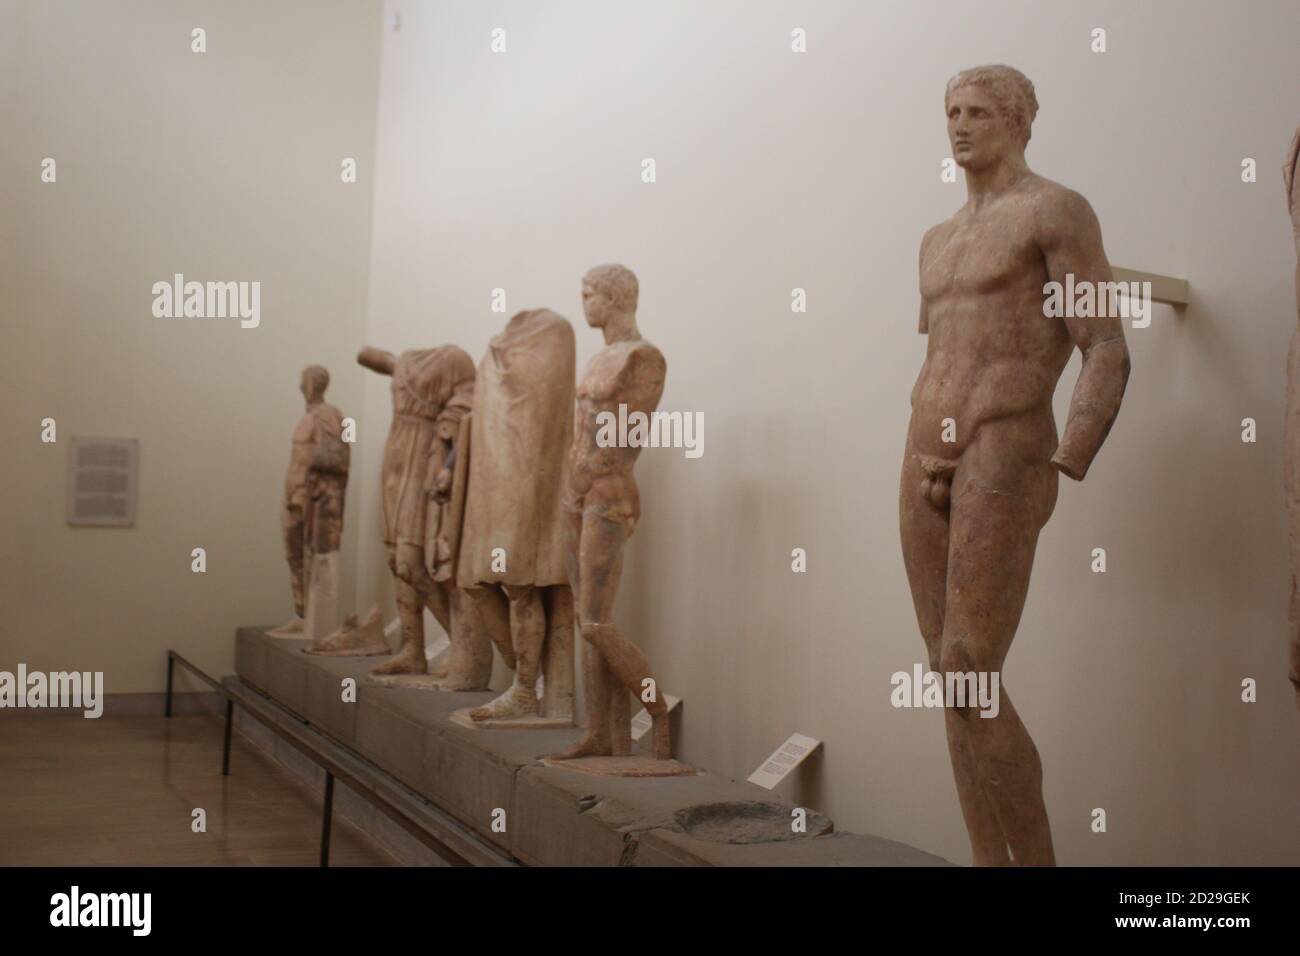 Dédicace de Daochos, statues de l'époque hellénistique sur le musée archéologique de Delphes en Grèce Banque D'Images